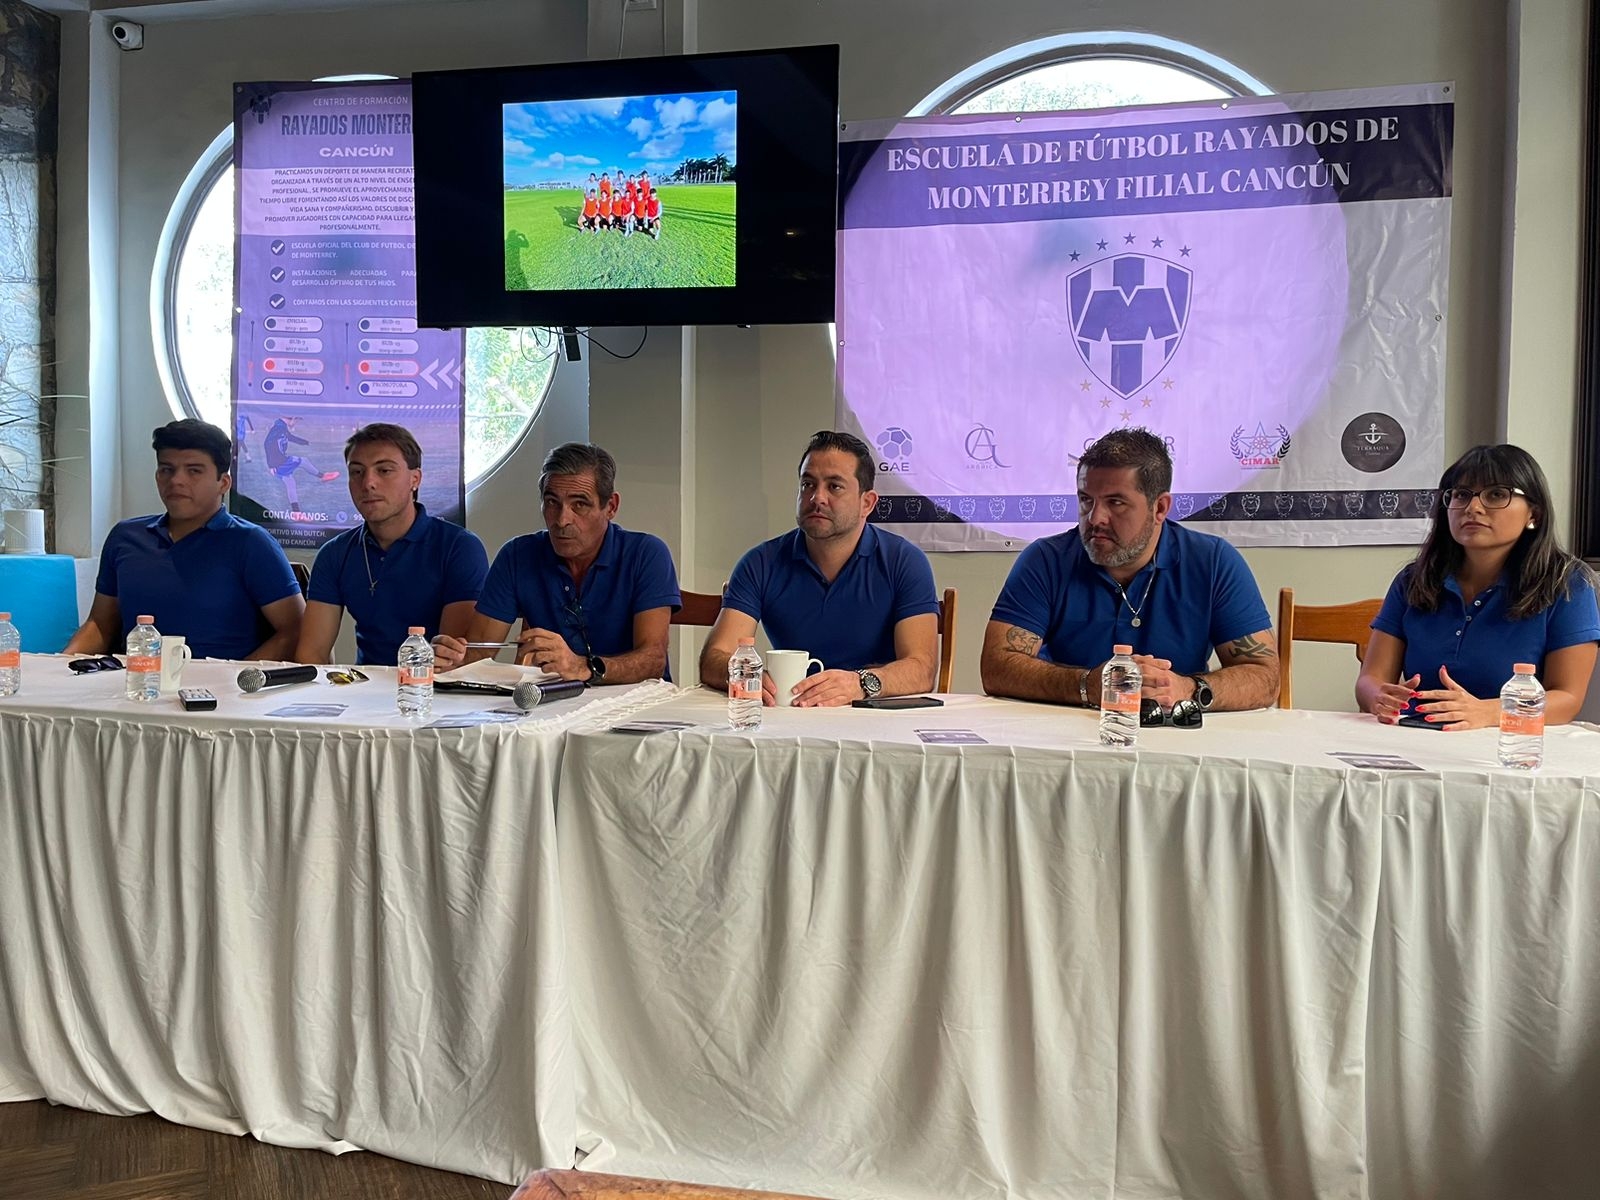 El club de fútbol Monterrey tendra una filial oficial en Cancún